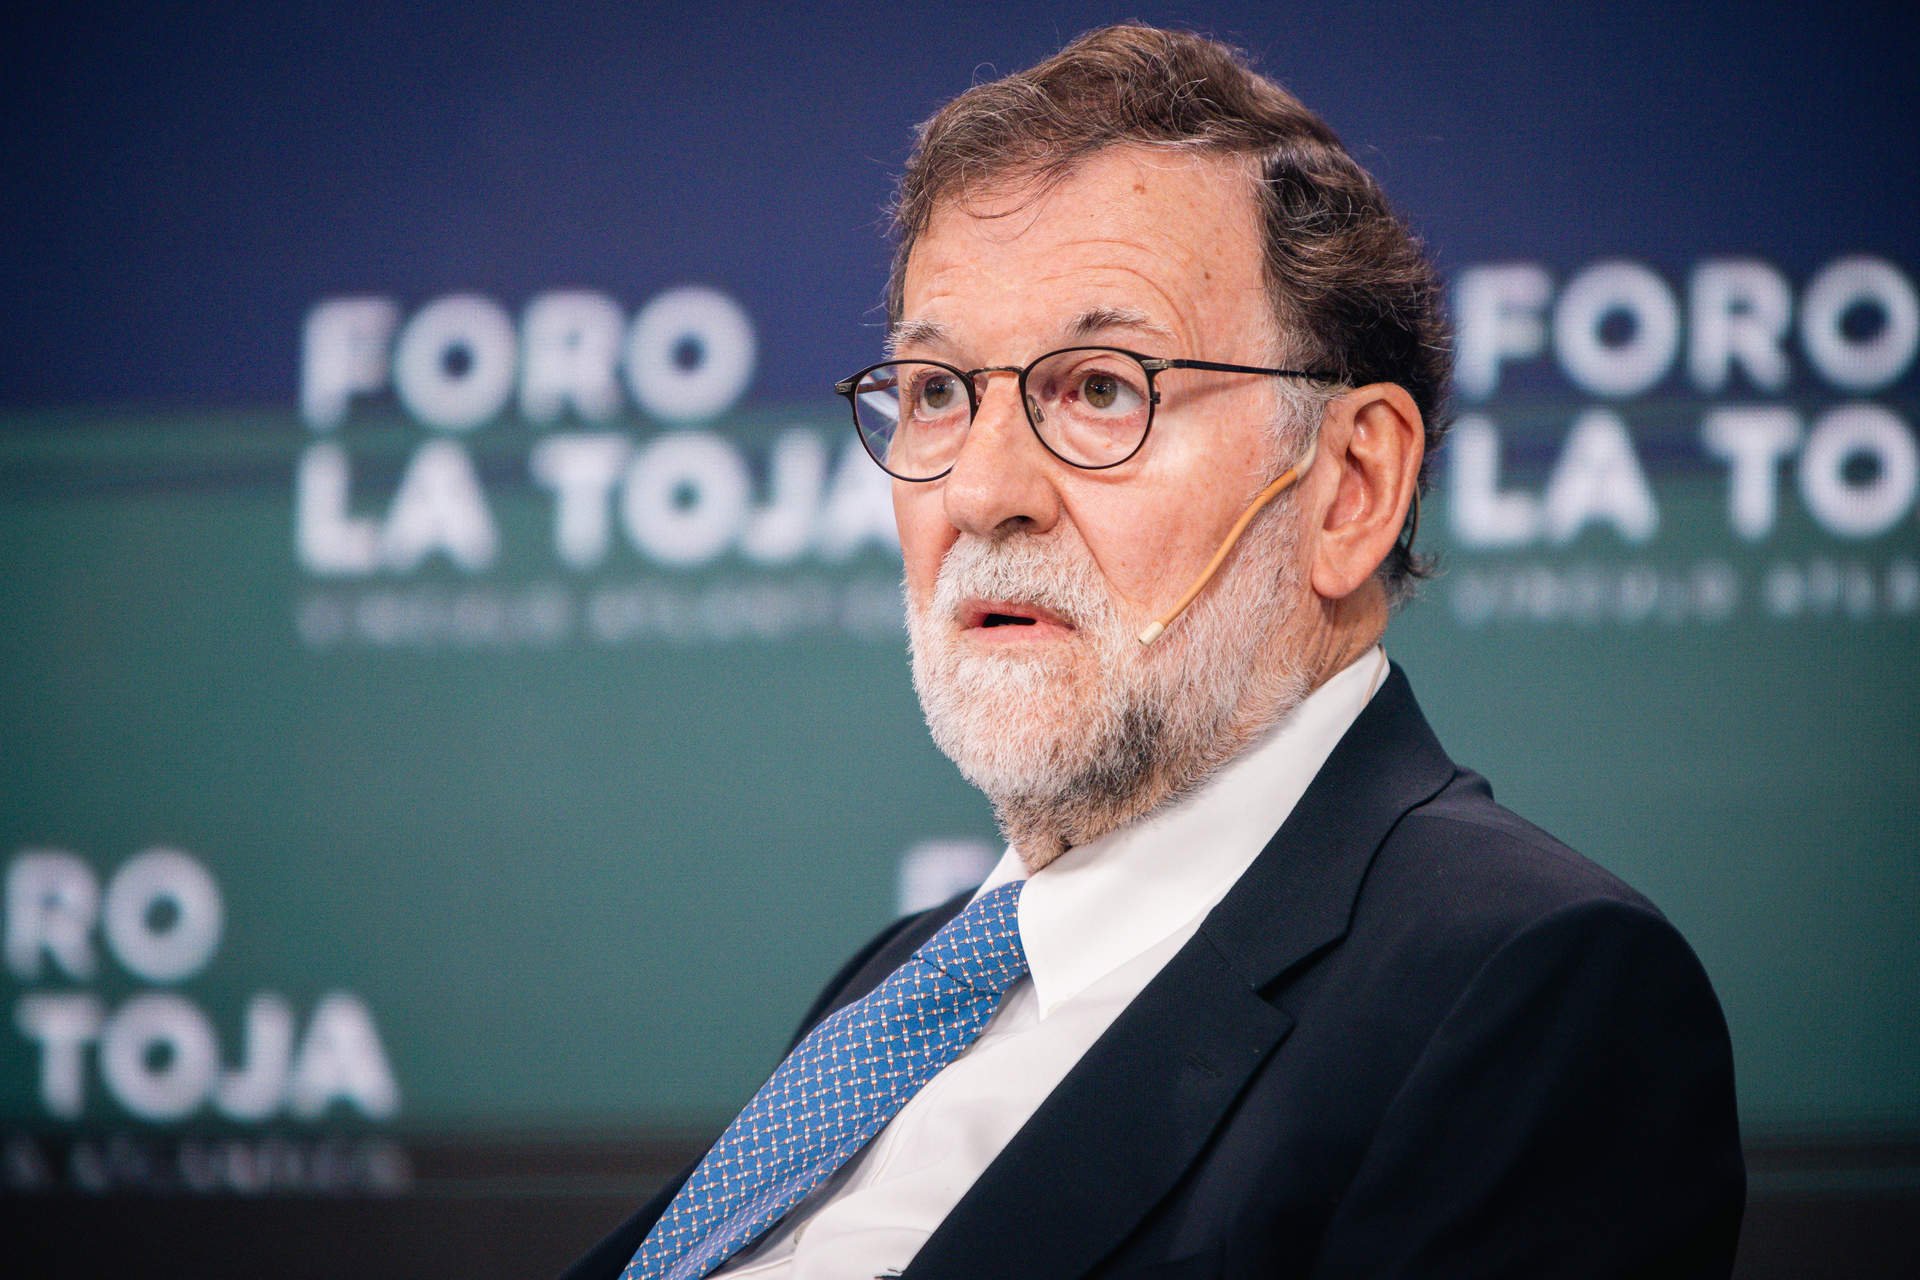 El expresidente del Gobierno Mariano Rajoy participa en el V Foro La Toja-Vínculo Atlántico, a 29 de septiembre de 2023, en la Isla de La Toja, O Grove, Pontevedra, Galicia.